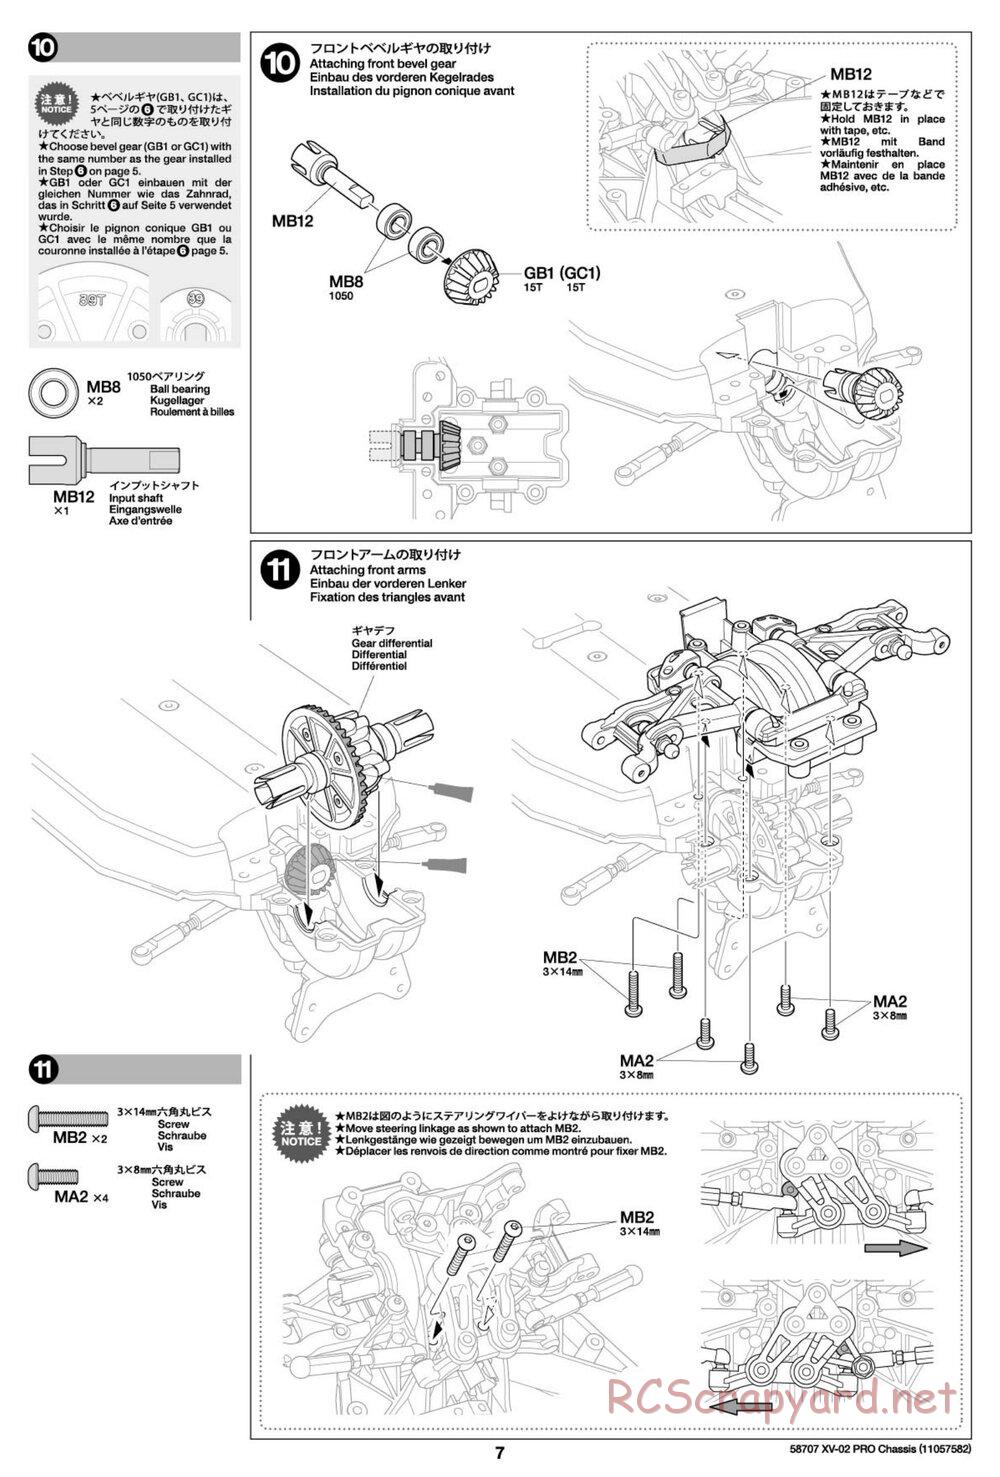 Tamiya - XV-02 Pro Chassis - Manual - Page 7